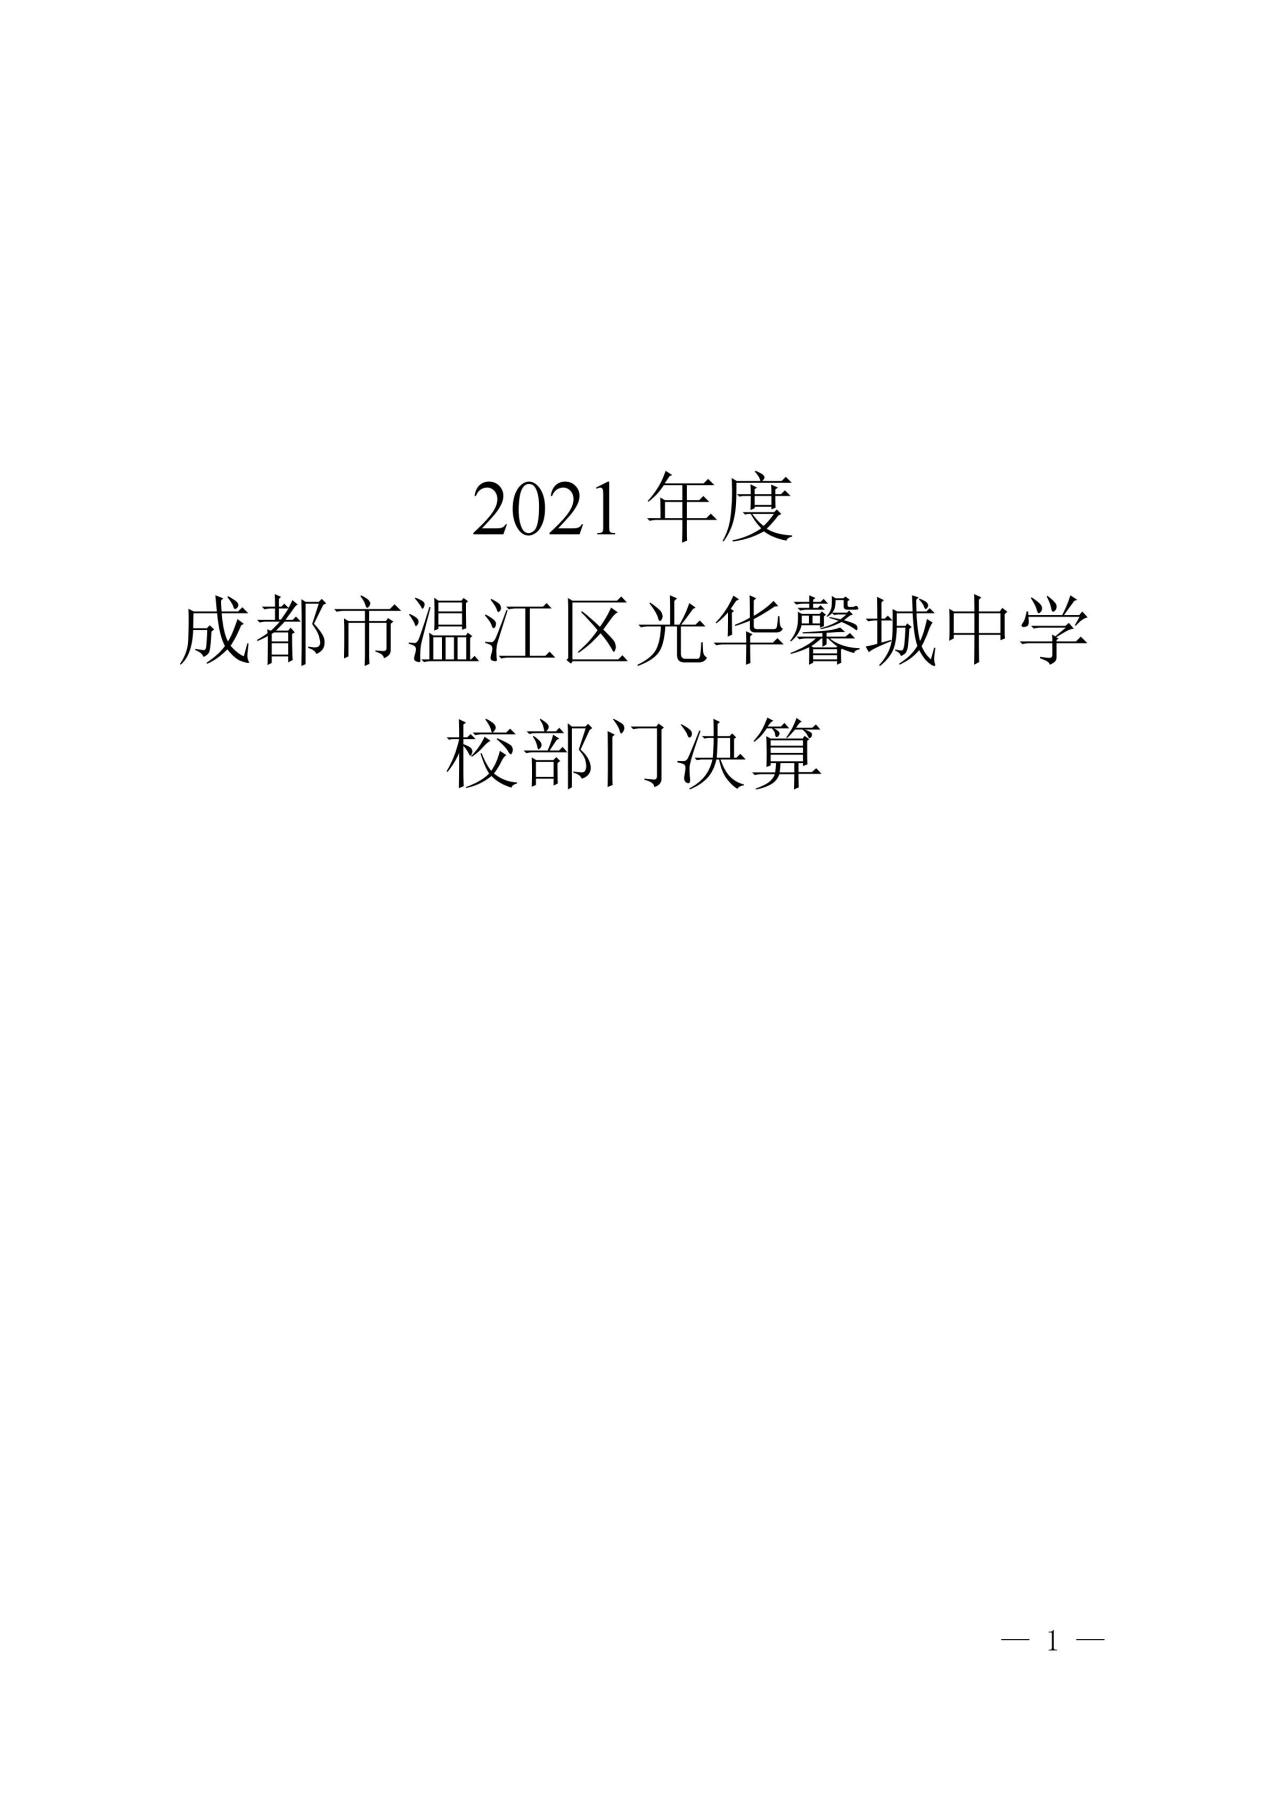 2021年度成都市温江区光华馨城中学校部门决算_00